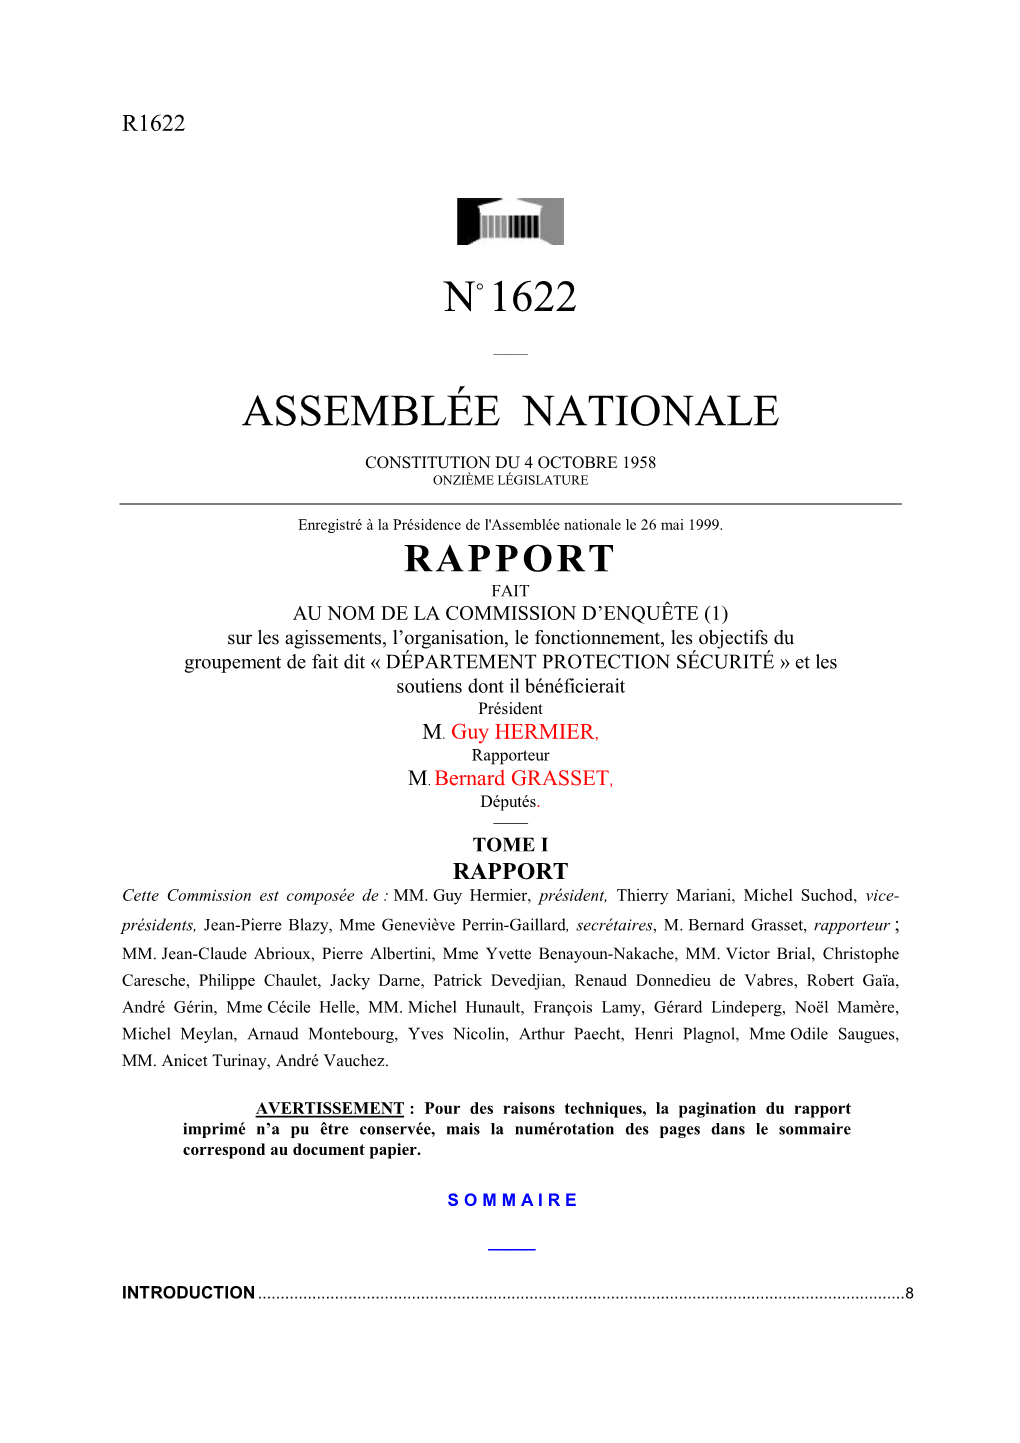 N° 1622 Assemblée Nationale